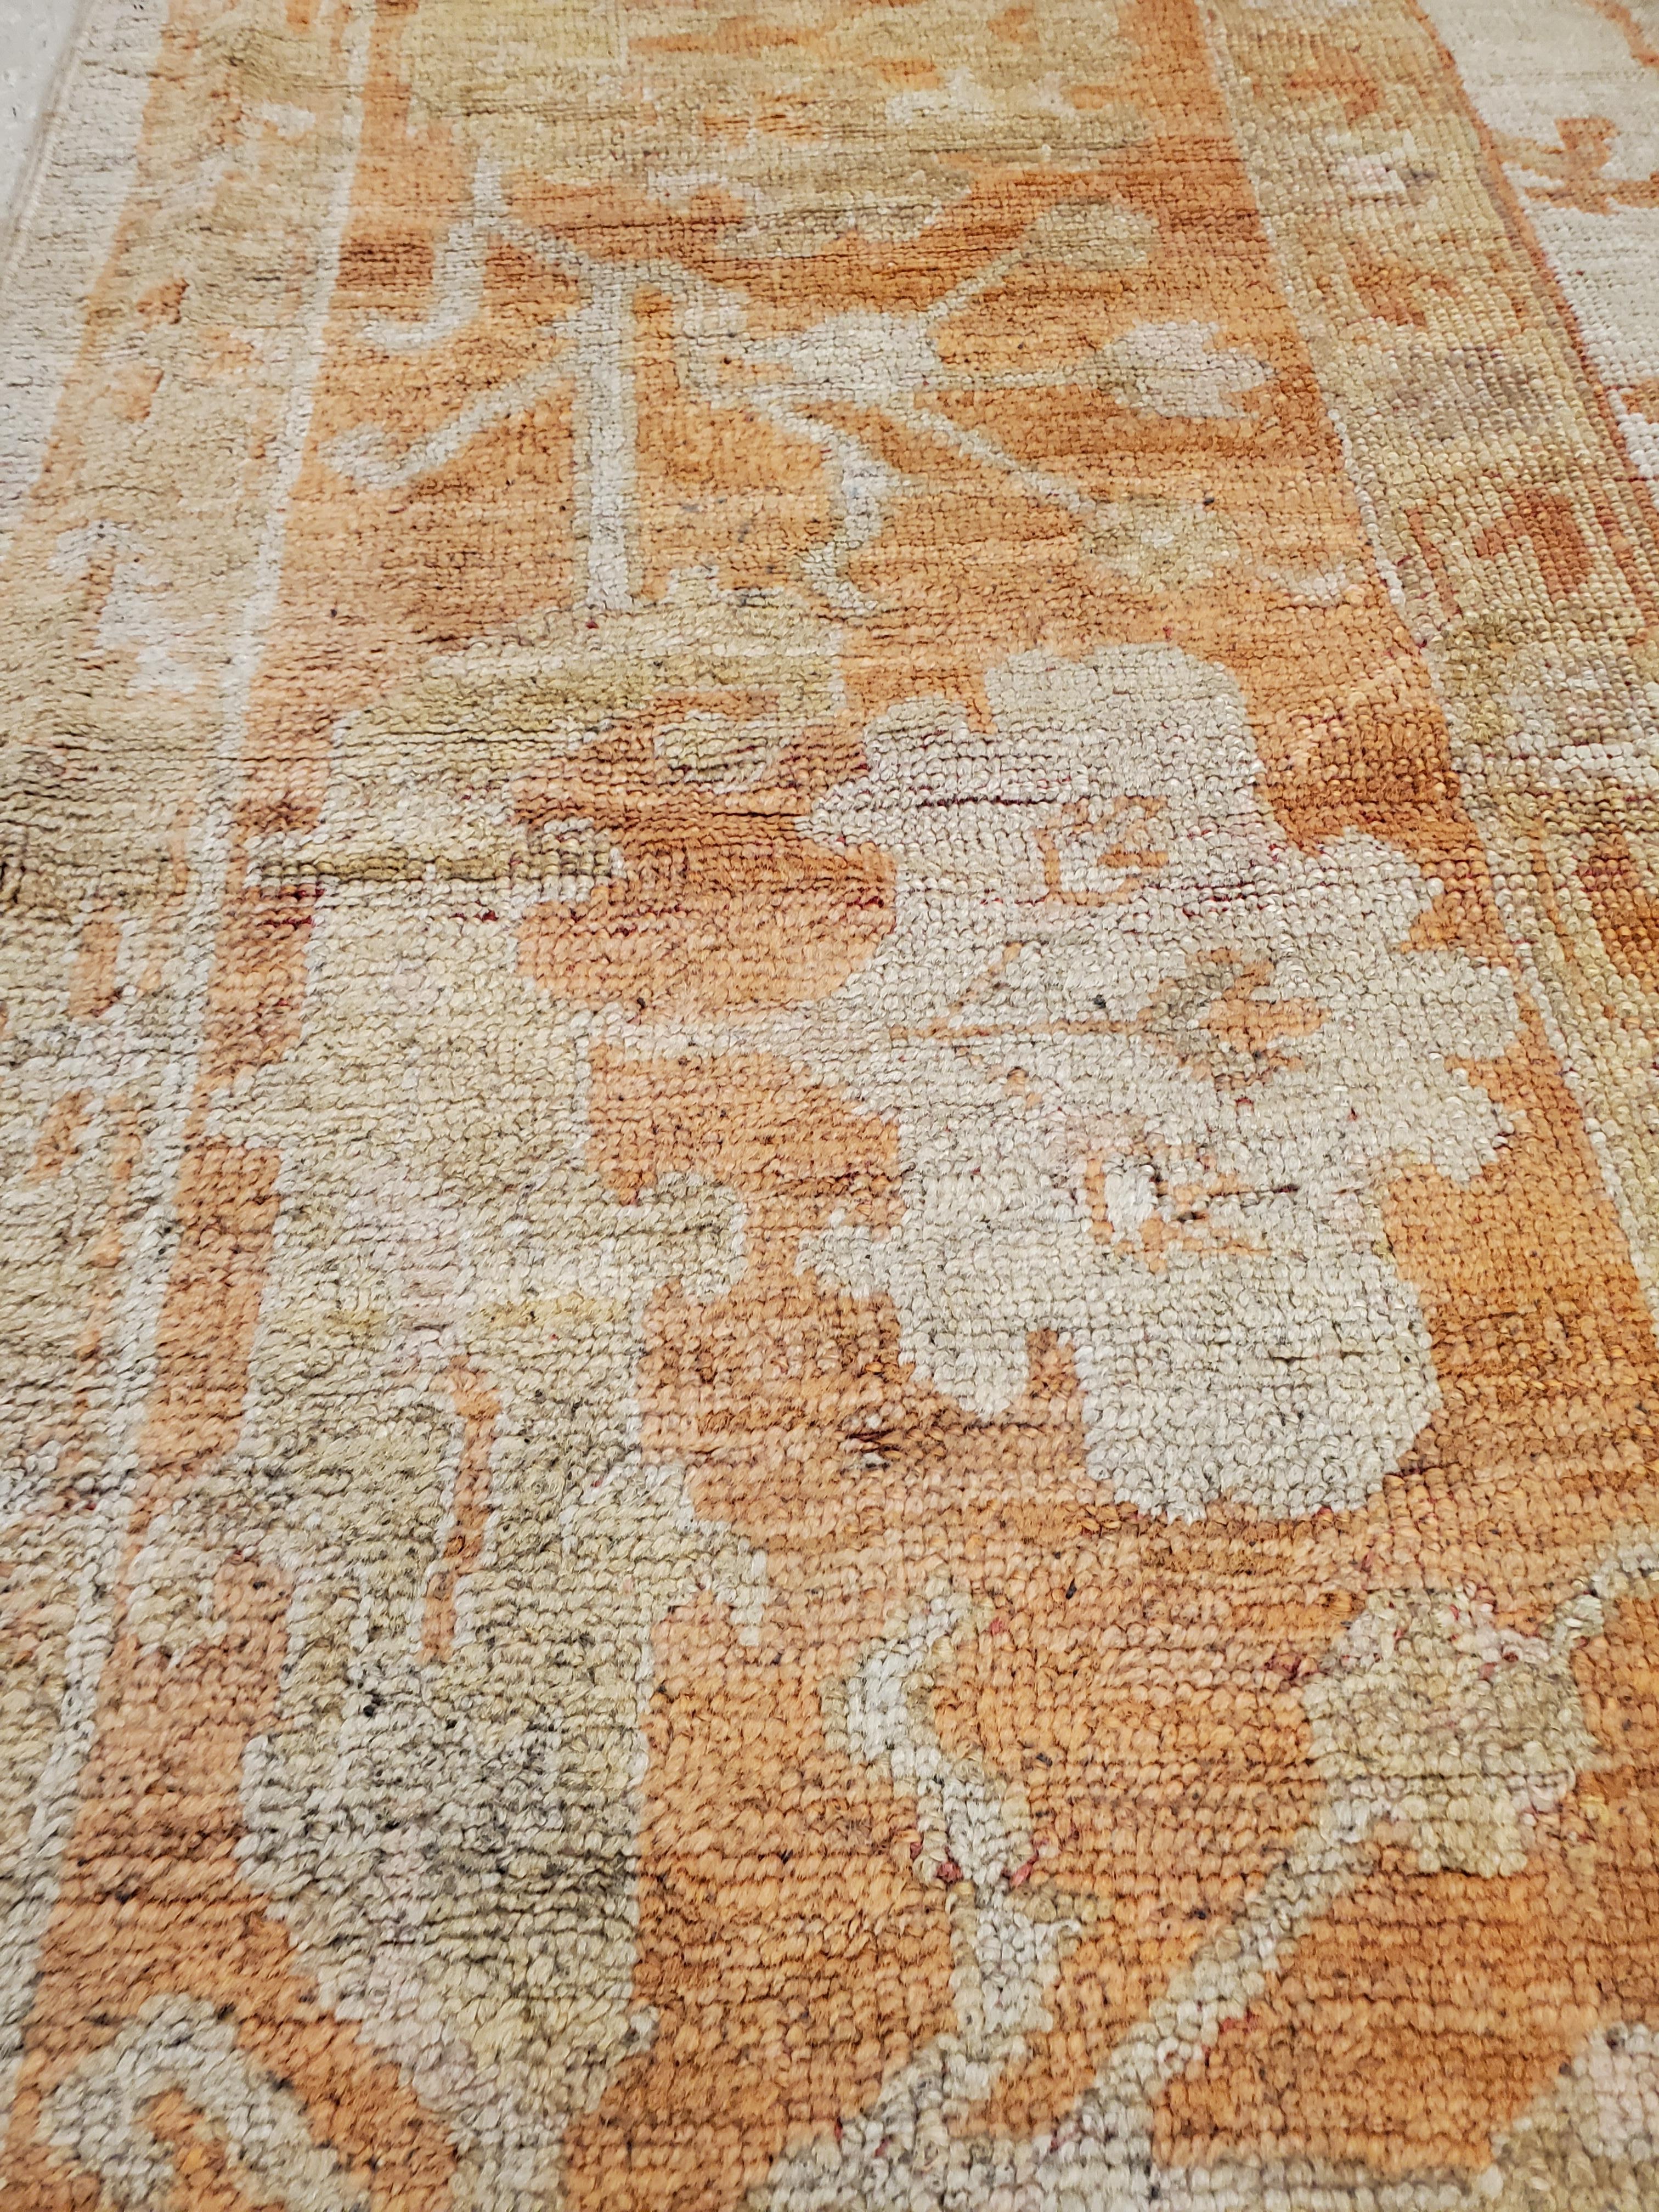 Antique Turkish Oushak Carpet, Handmade Oriental Rug, Beige, Taupe, Shrimp Coral For Sale 2